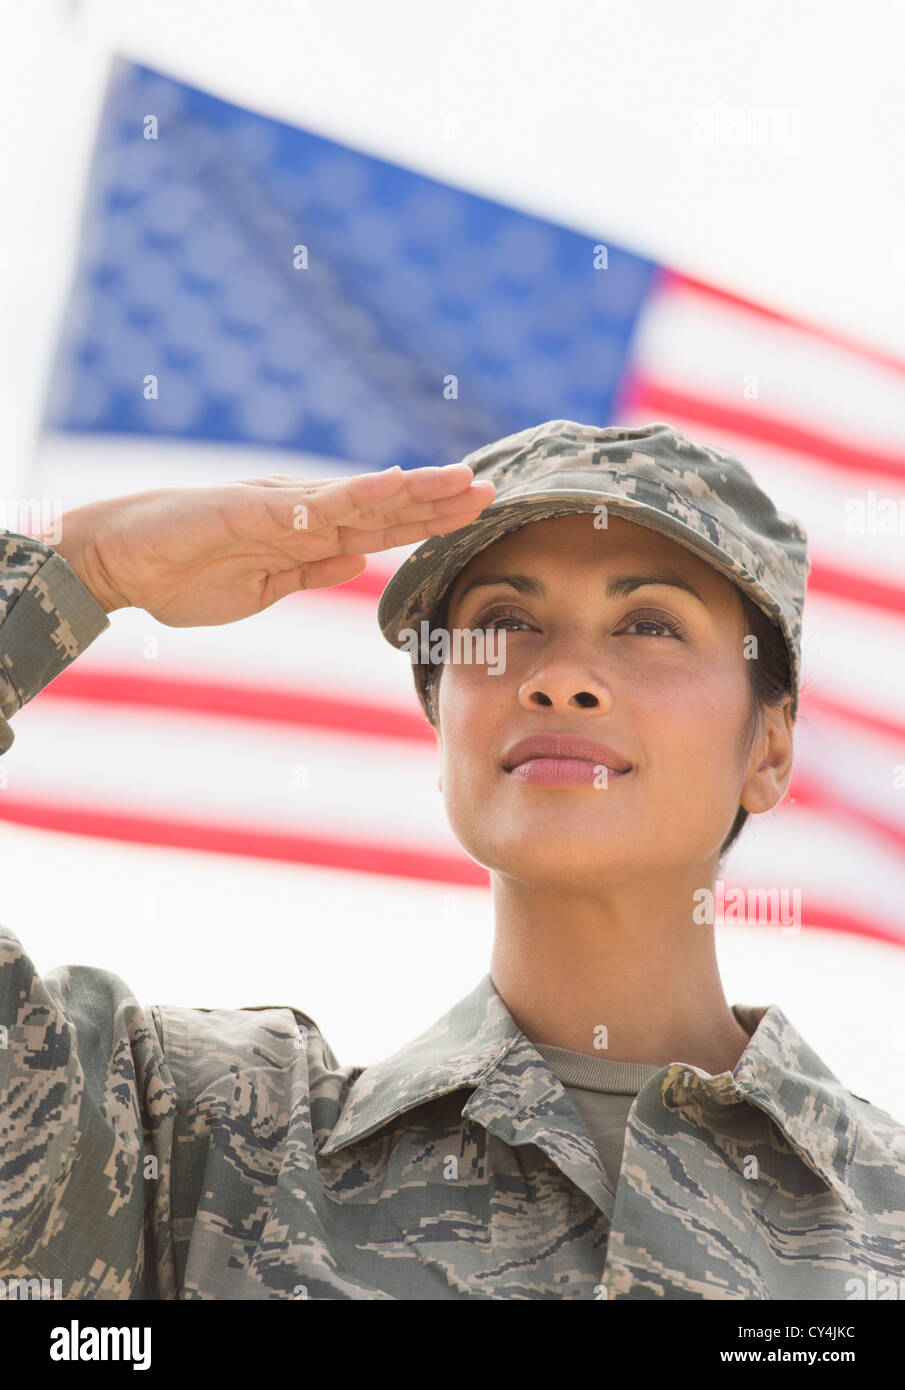 USA, New Jersey, Jersey City, weibliche Armee Soldaten salutieren, amerikanische Flagge im Hintergrund Stockfoto